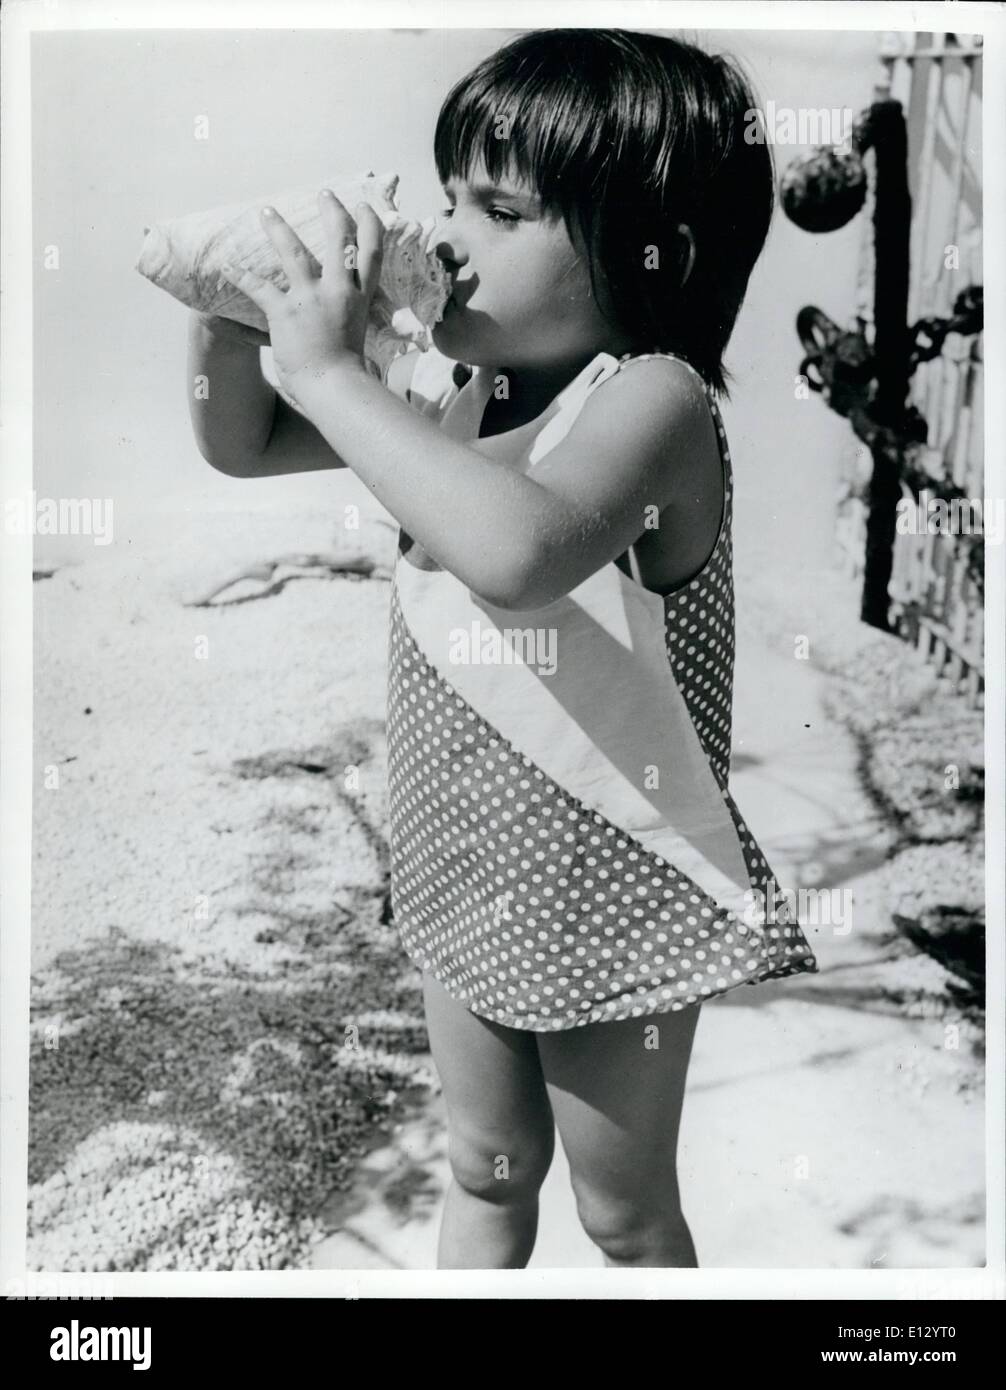 26. Februar 2012 - ist das Muschelhorn bläst Wettbewerb immer ein beliebtes Feature von Key West, Florida, Insel früher fest. Die kleinsten Champ, Robin Johnson, zeigt ihre Technik. Vor Jahren angegeben eine Explosion auf der Muschel ein Schiff in Not auf der Insel Korallenriffe. Stockfoto